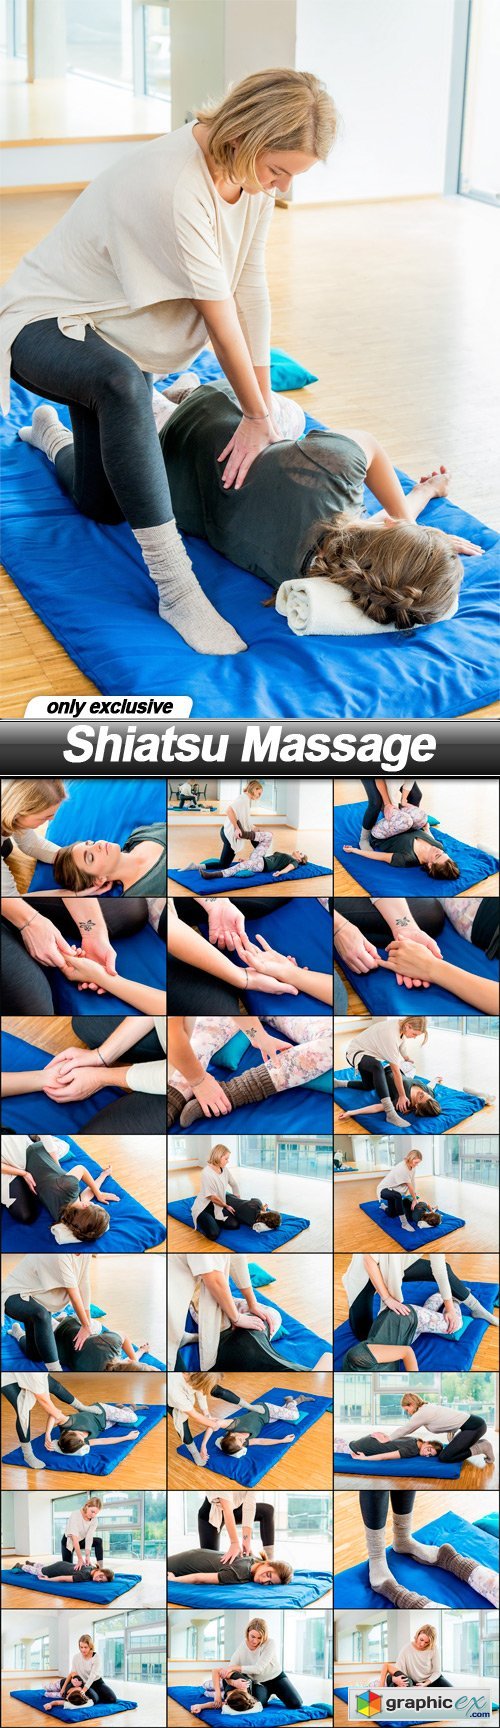 Shiatsu Massage - 24 UHQ JPEG